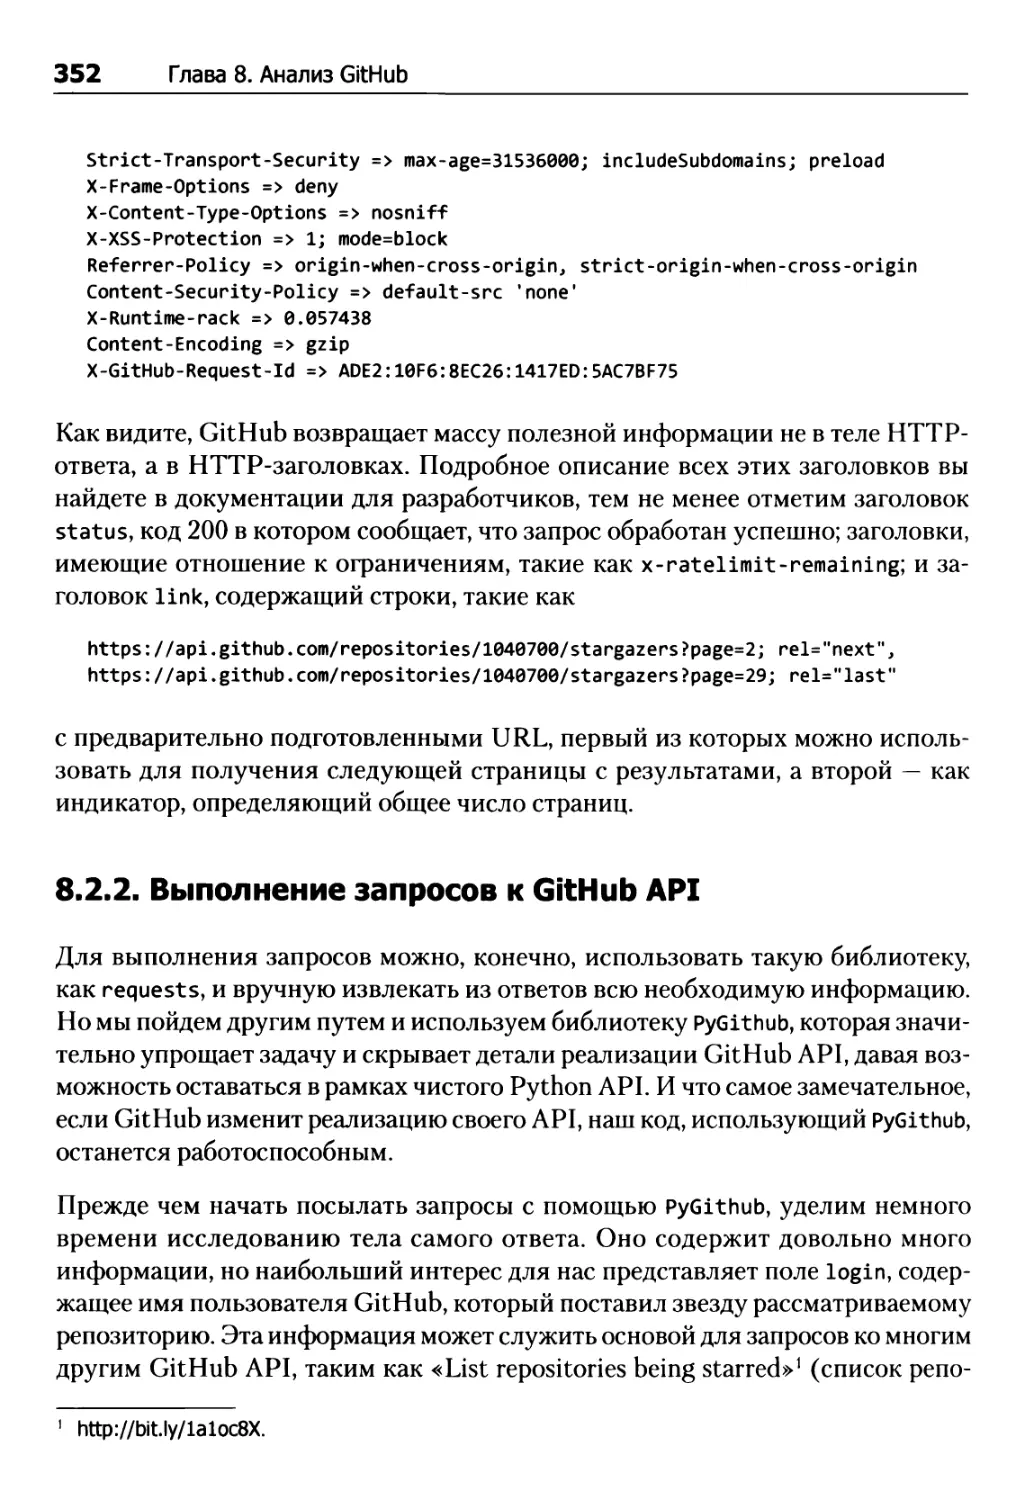 8.2.2. Выполнение запросов к GitHub API